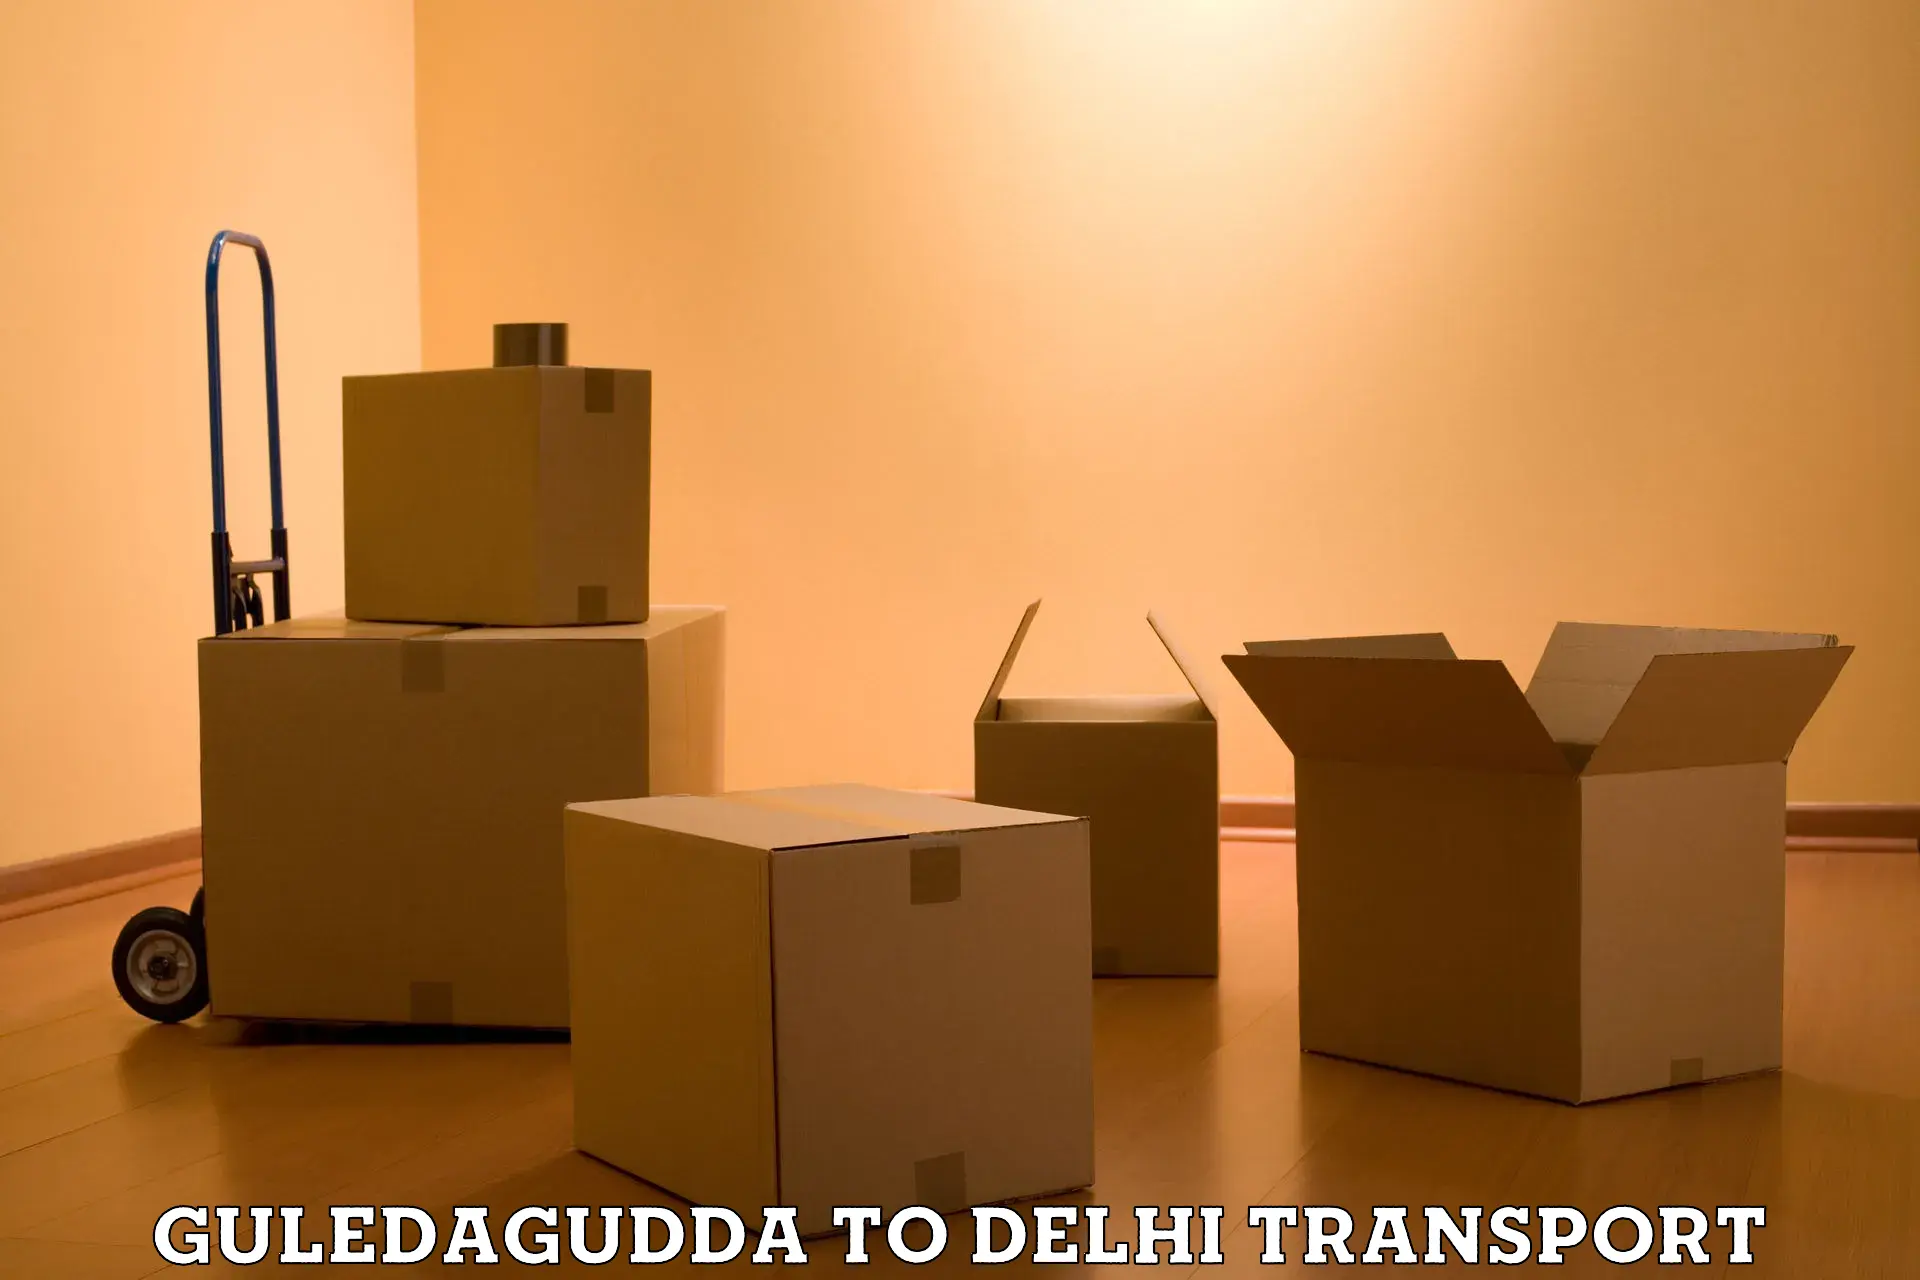 Transportation services Guledagudda to IIT Delhi